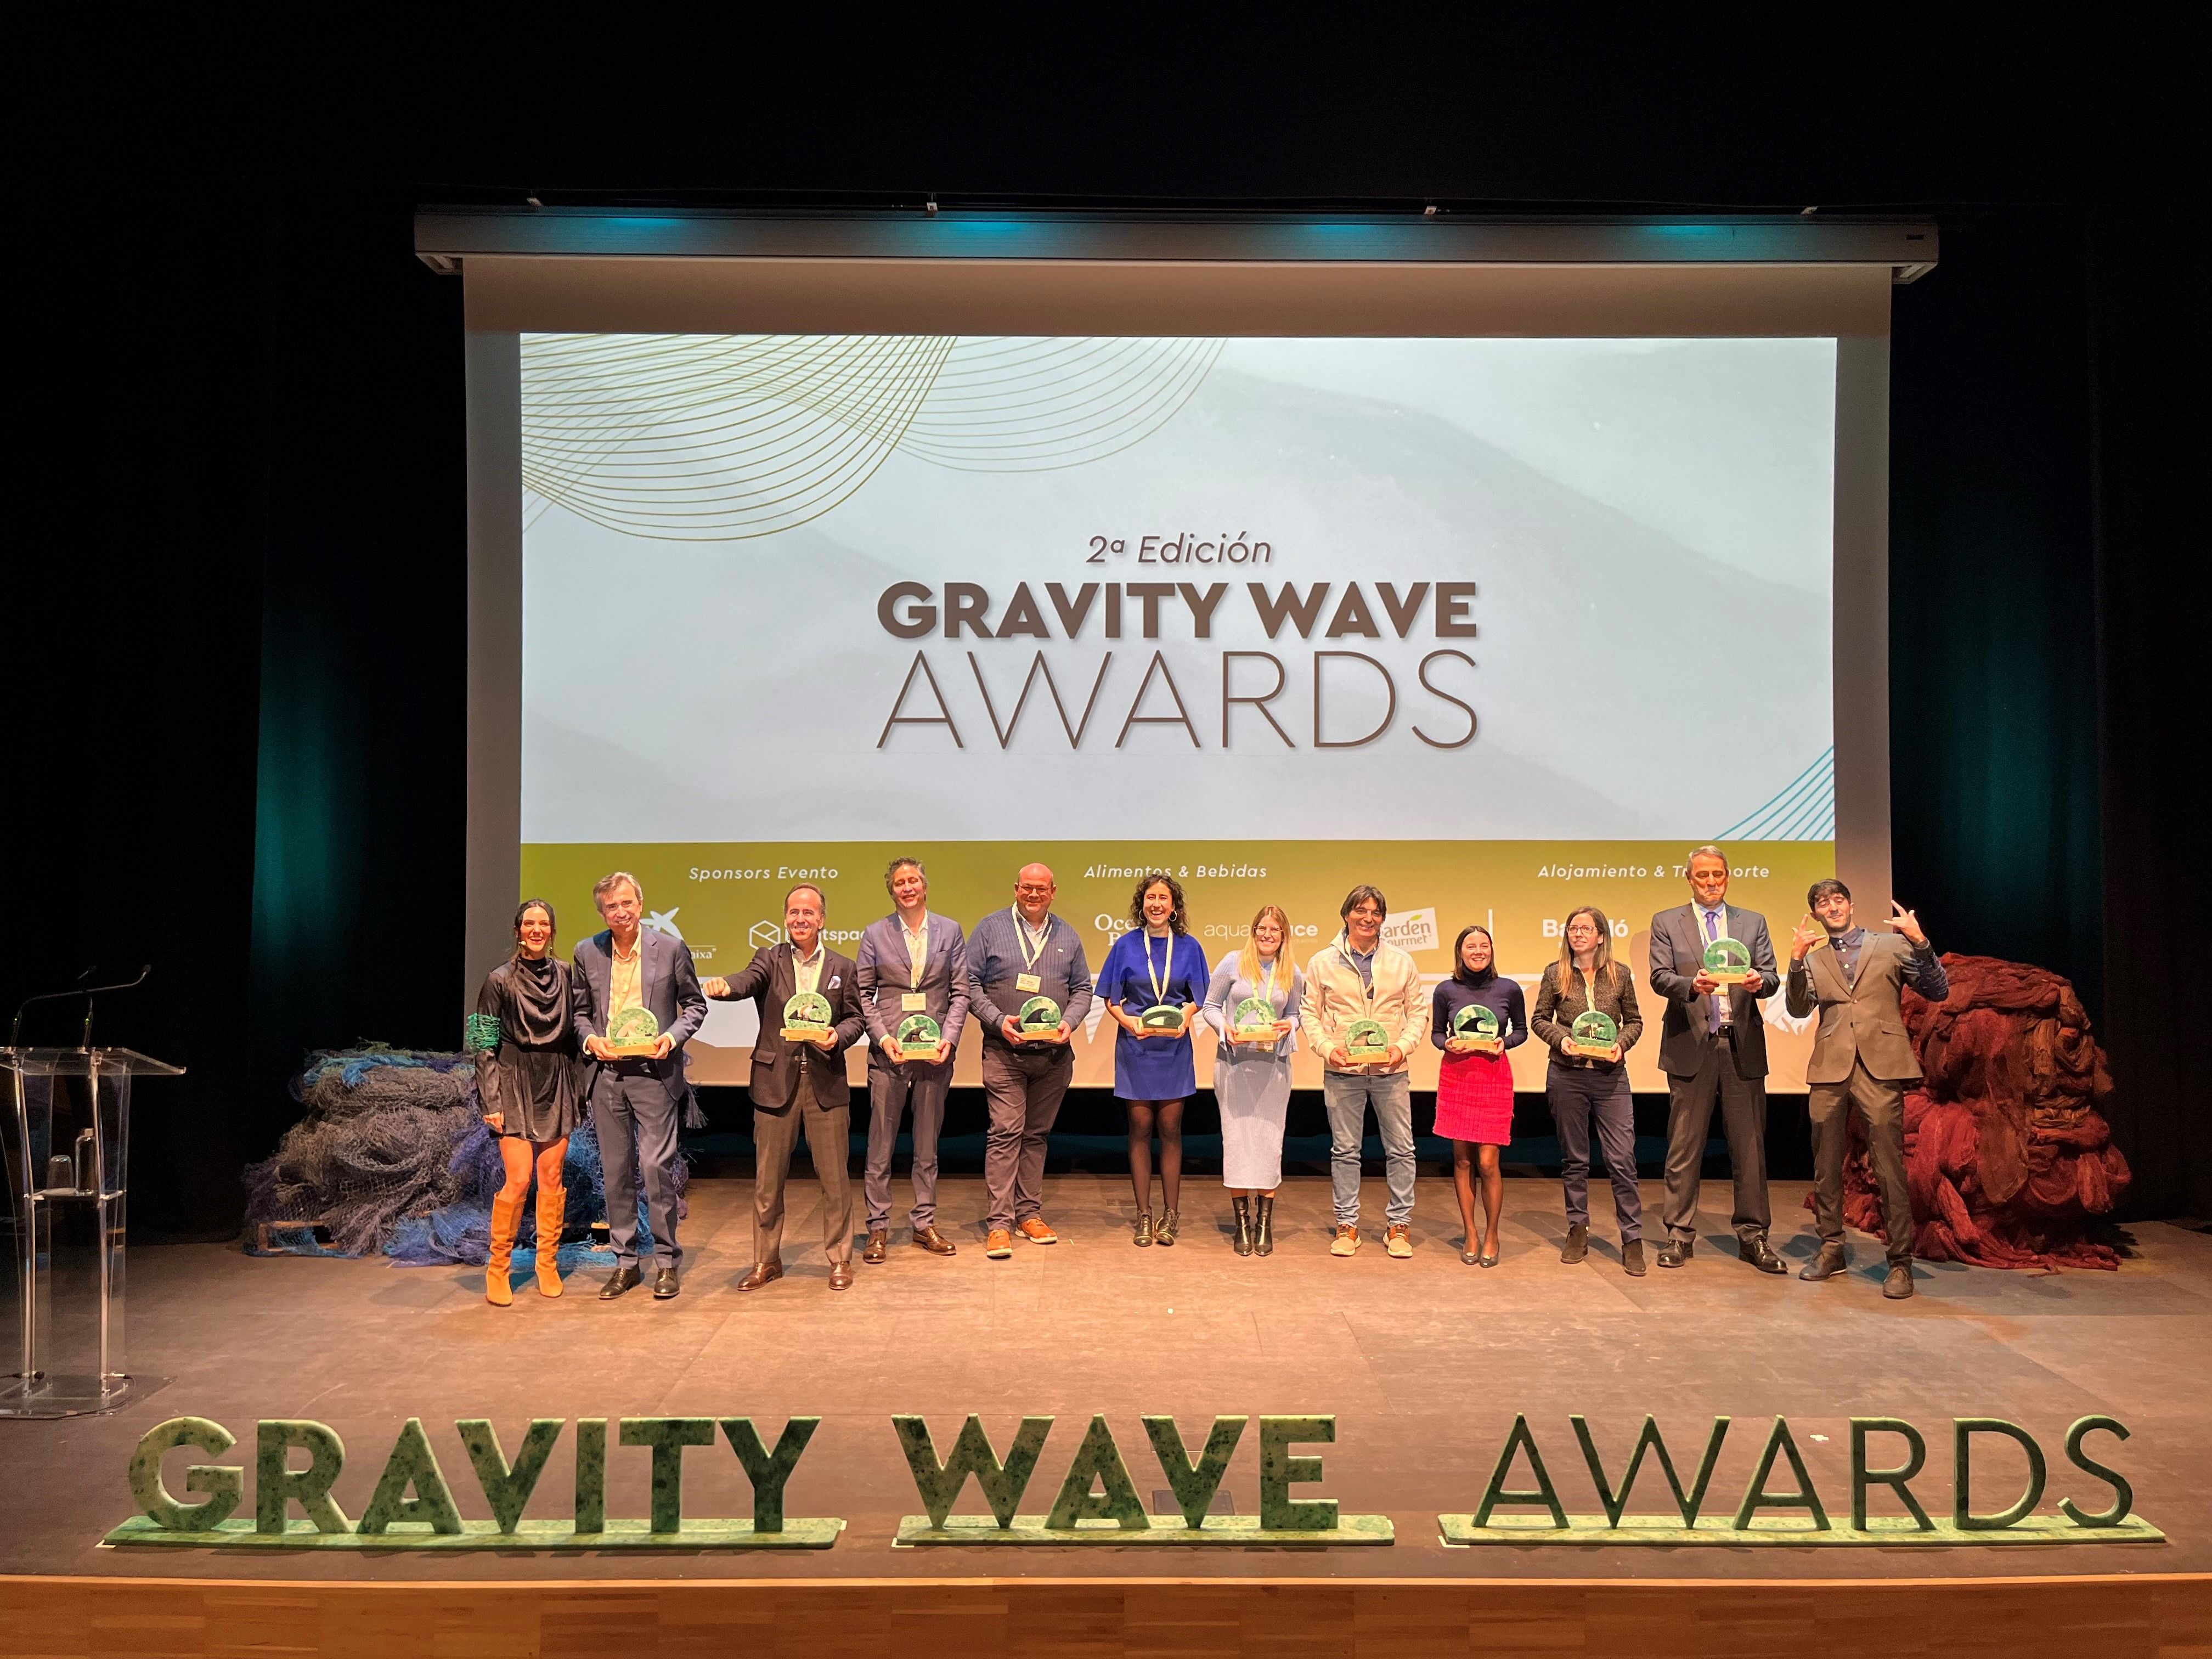 MINI, Alain Afflelou, ISDIN y Viña Esmeralda entre los ganadores de la 2ª Edición de los Gravity Wave Awards